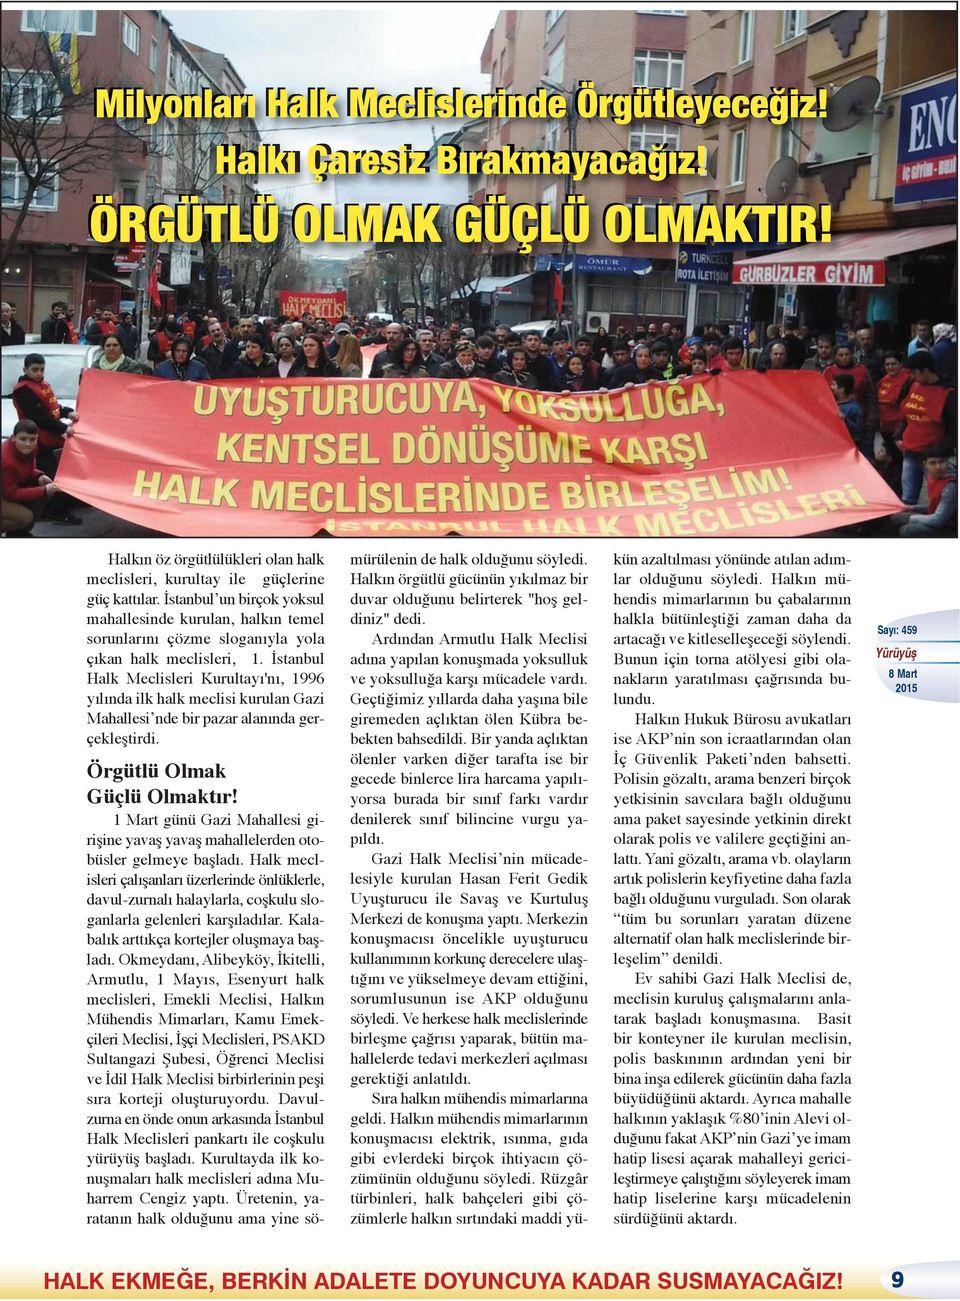 İstanbul Halk Meclisleri Kurultayı'nı, 1996 yılında ilk halk meclisi kurulan Gazi Mahallesi nde bir pazar alanında gerçekleştirdi. Örgütlü Olmak Güçlü Olmaktır!